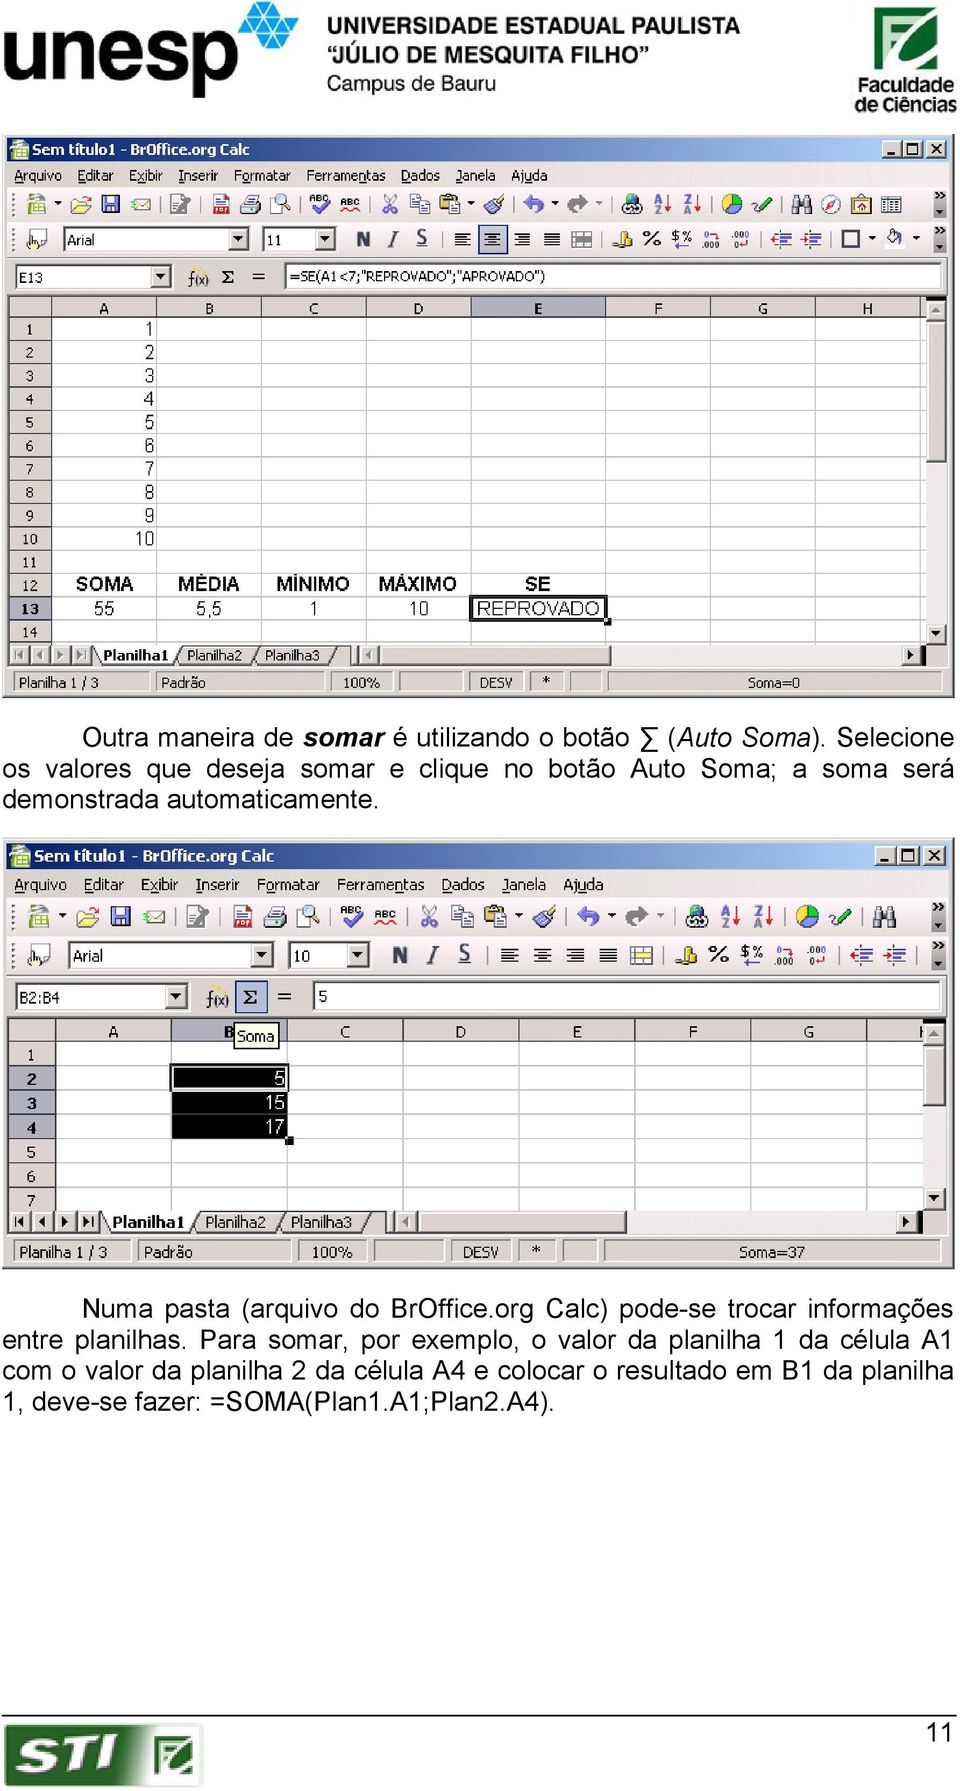 Numa pasta (arquivo do BrOffice.org Calc) pode-se trocar informações entre planilhas.